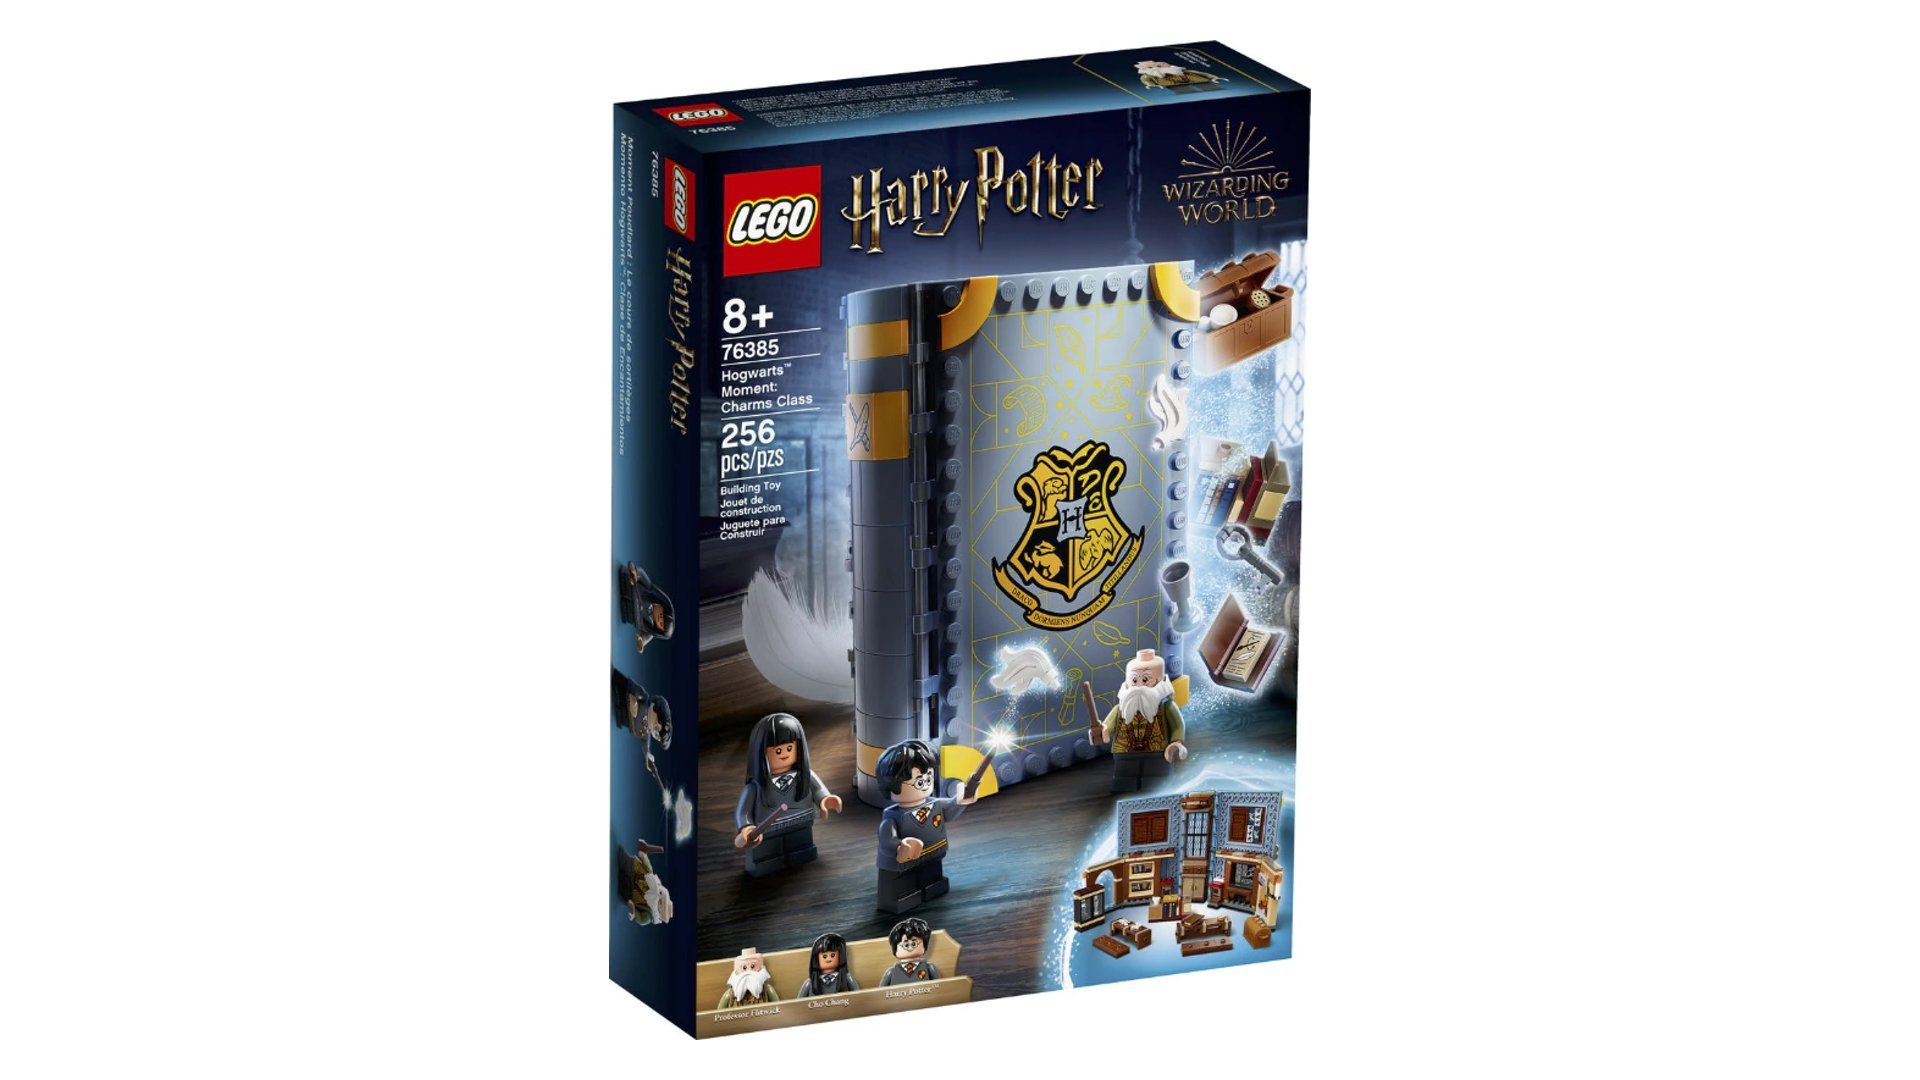 Le jeu LEGO Harry Potter Poudlard : le cours de sortilèges est en promotion sur Aliexpress.